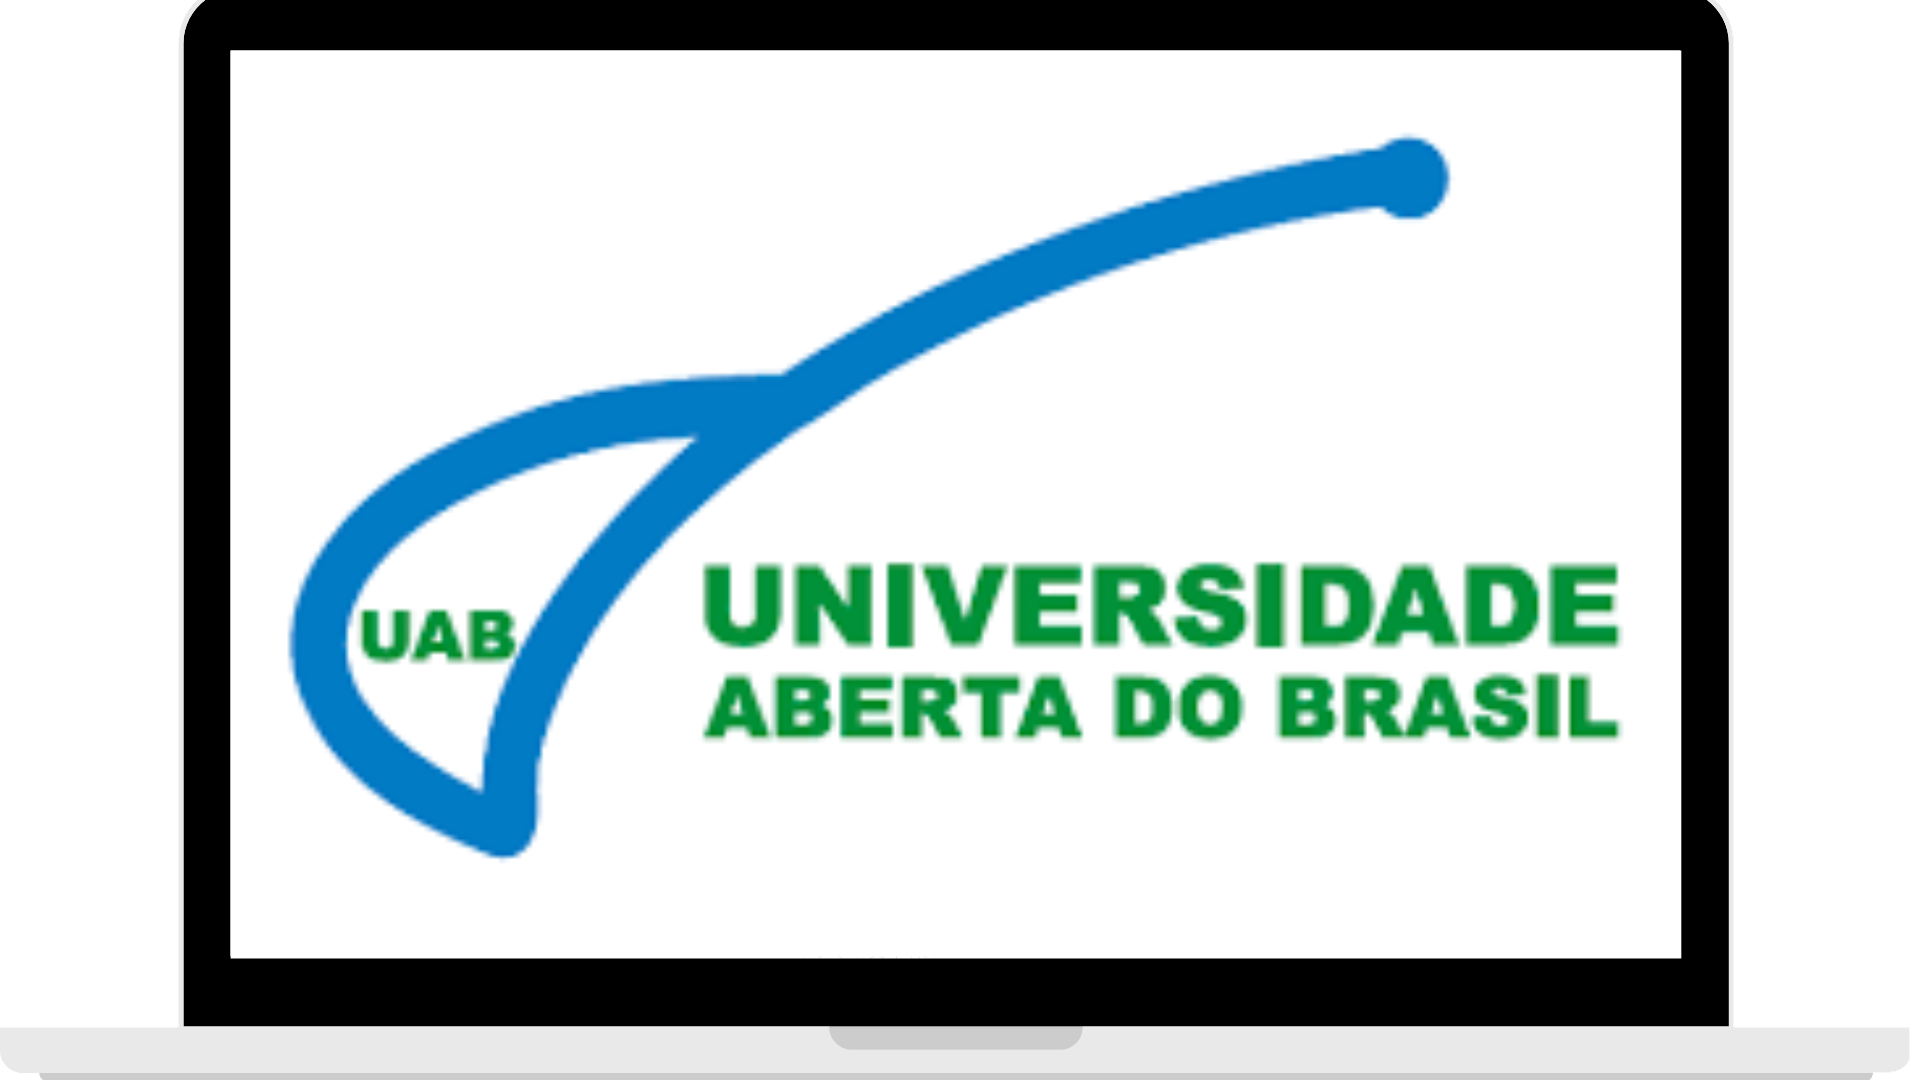 Universidade Aberta do Brasil